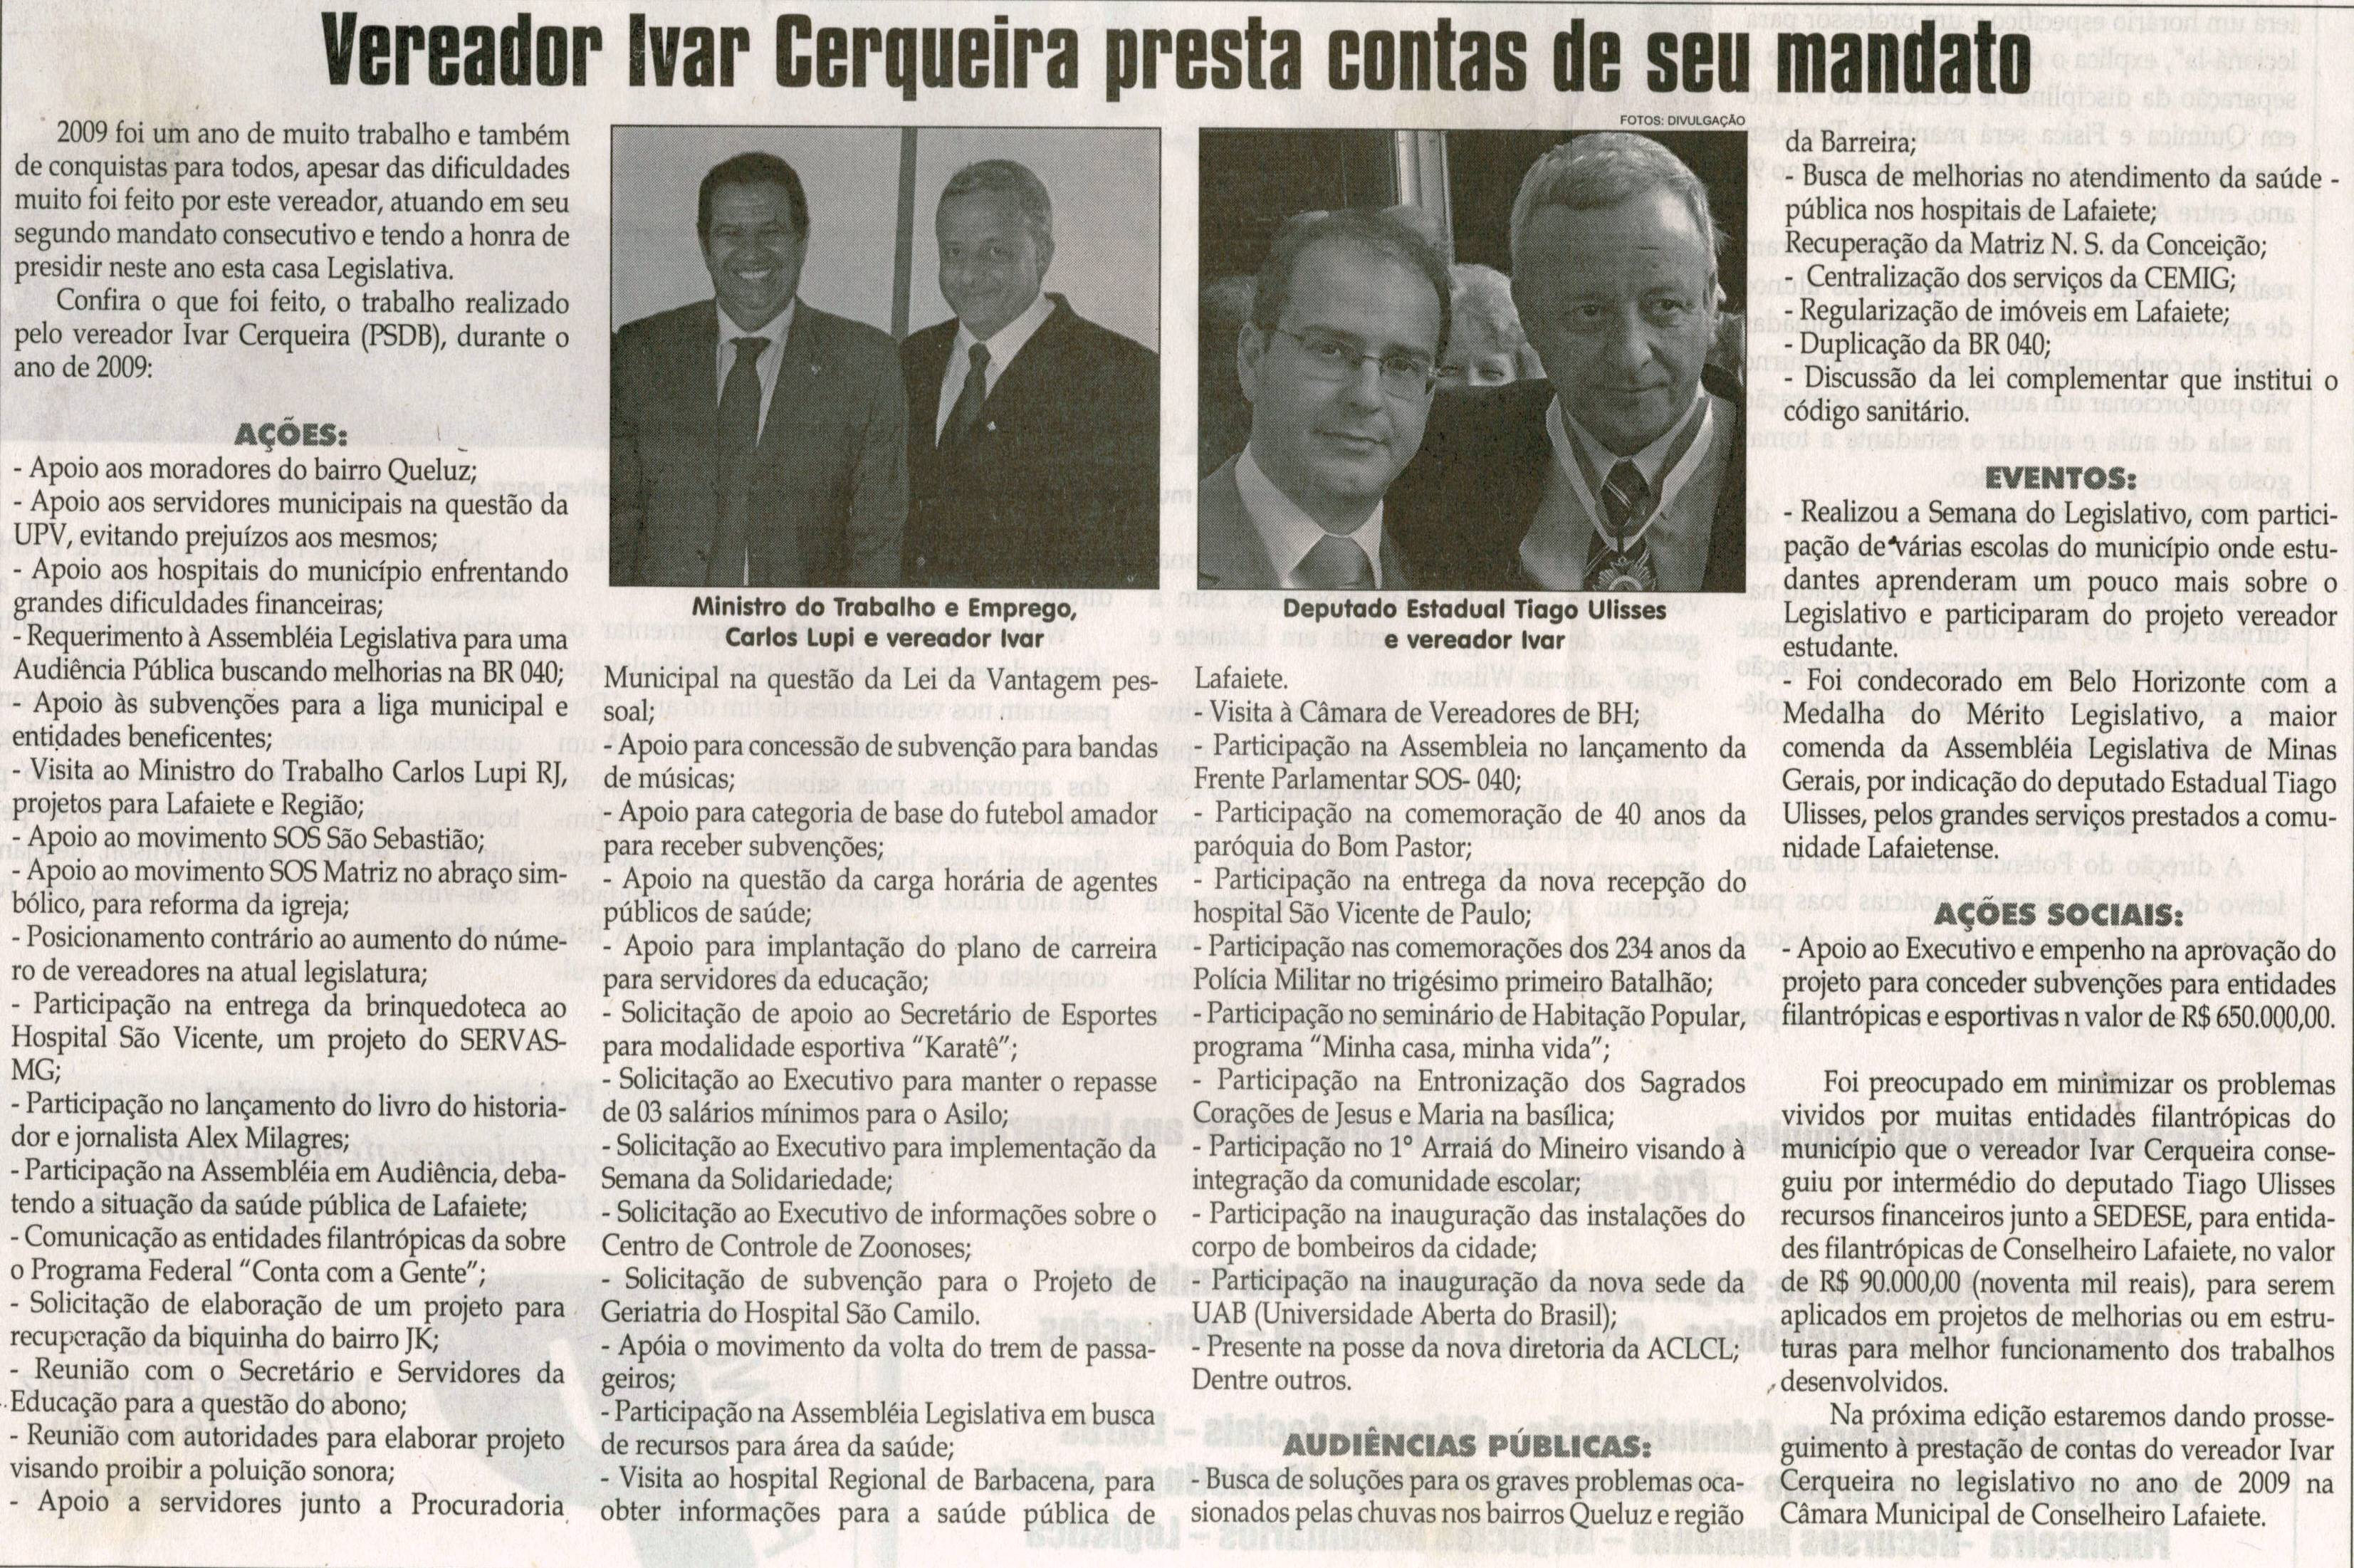 Vereador Ivar Cerqueira presta contas de seu mandato. Jornal Correio da Cidade, Conselheiro Lafaiete, 30 jan. 2010, p. B7.